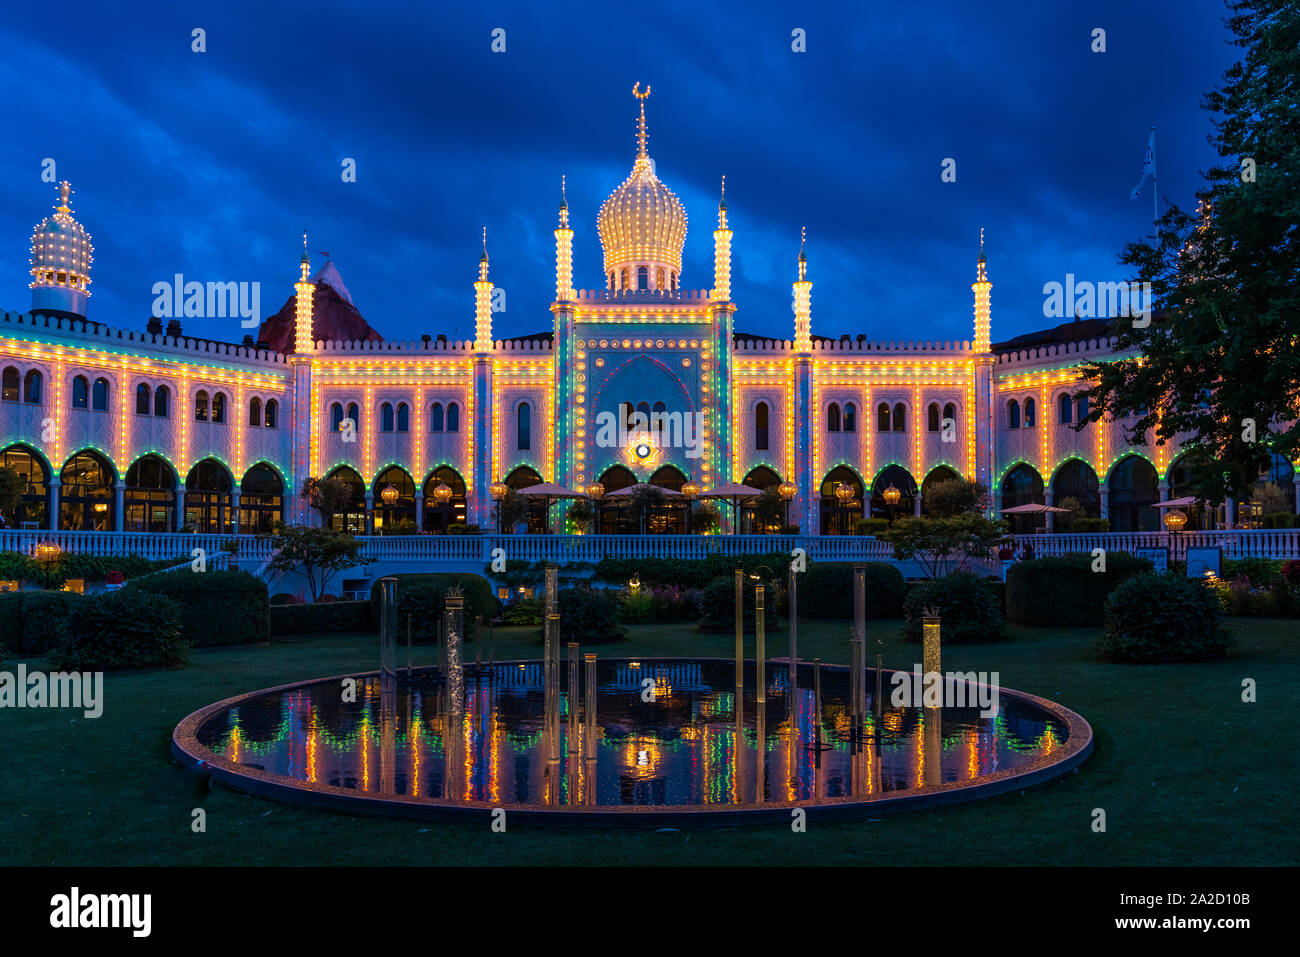 The Moorish Palace, the Nimb Hotel and Restaurant illuminated at night in the Tivoli Gardens, Copenhagen, Denmark. Stock Photo